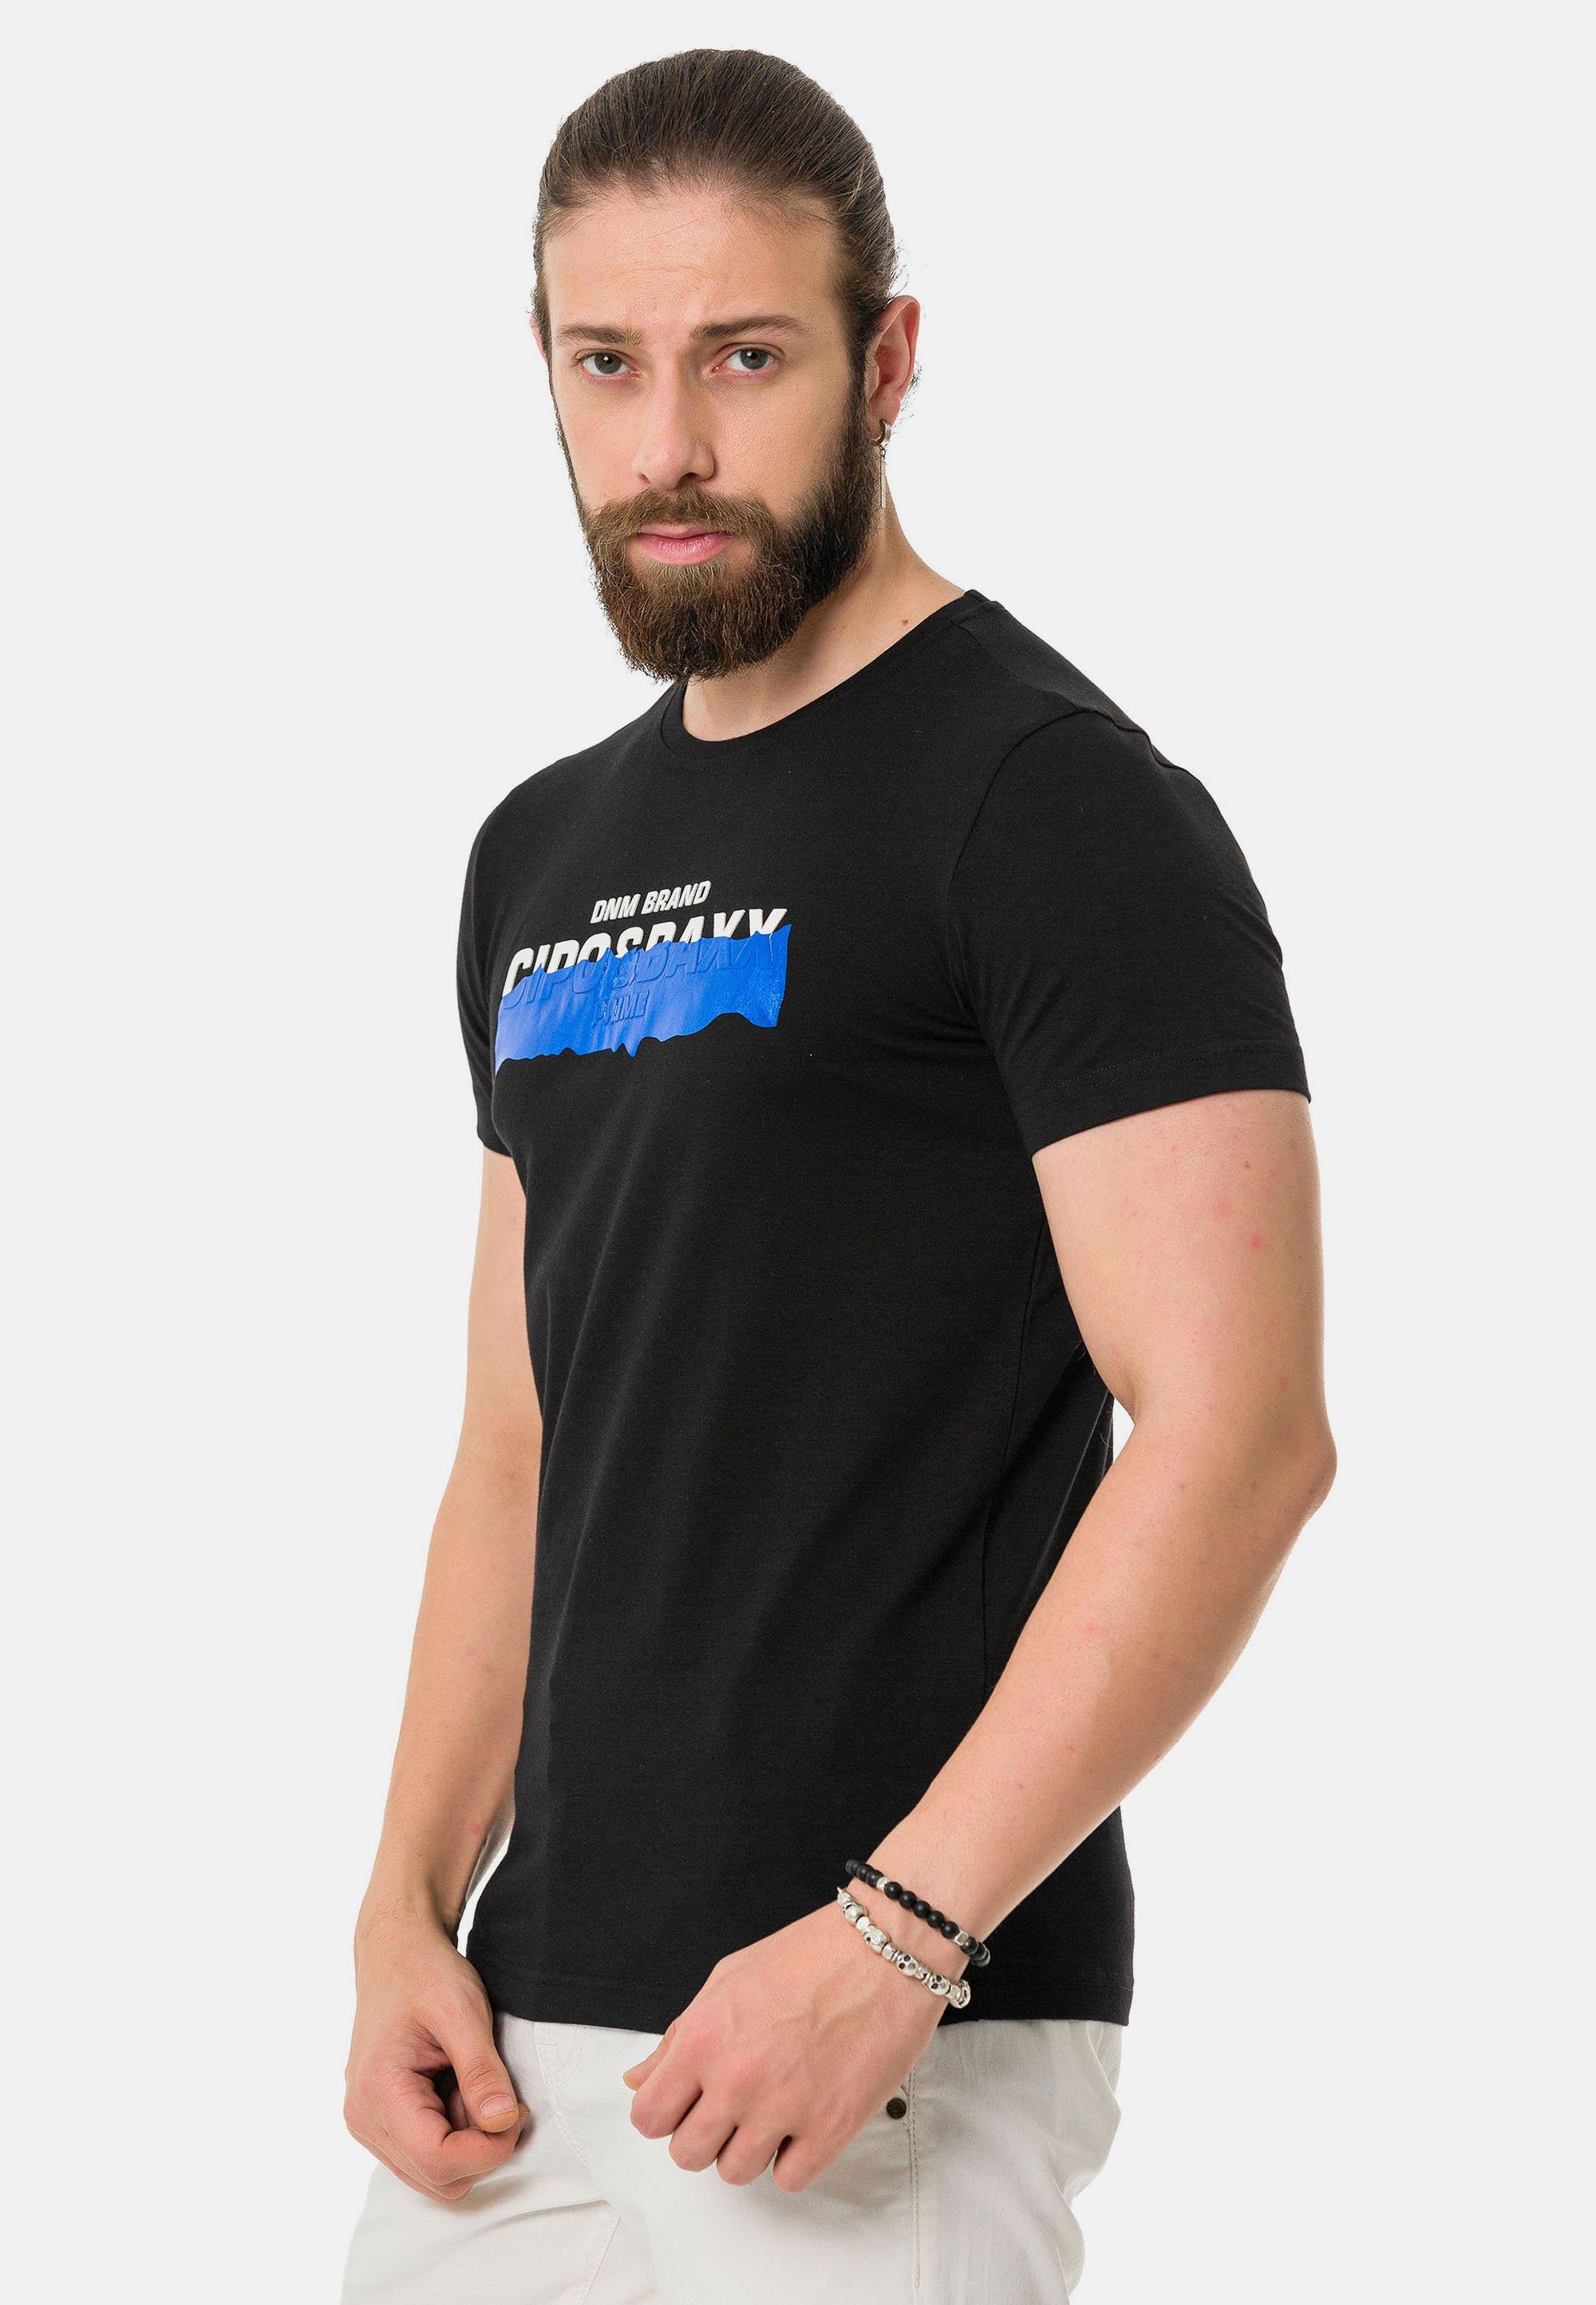 Baxx schwarz & T-Shirt Markenprint mit coolem Cipo